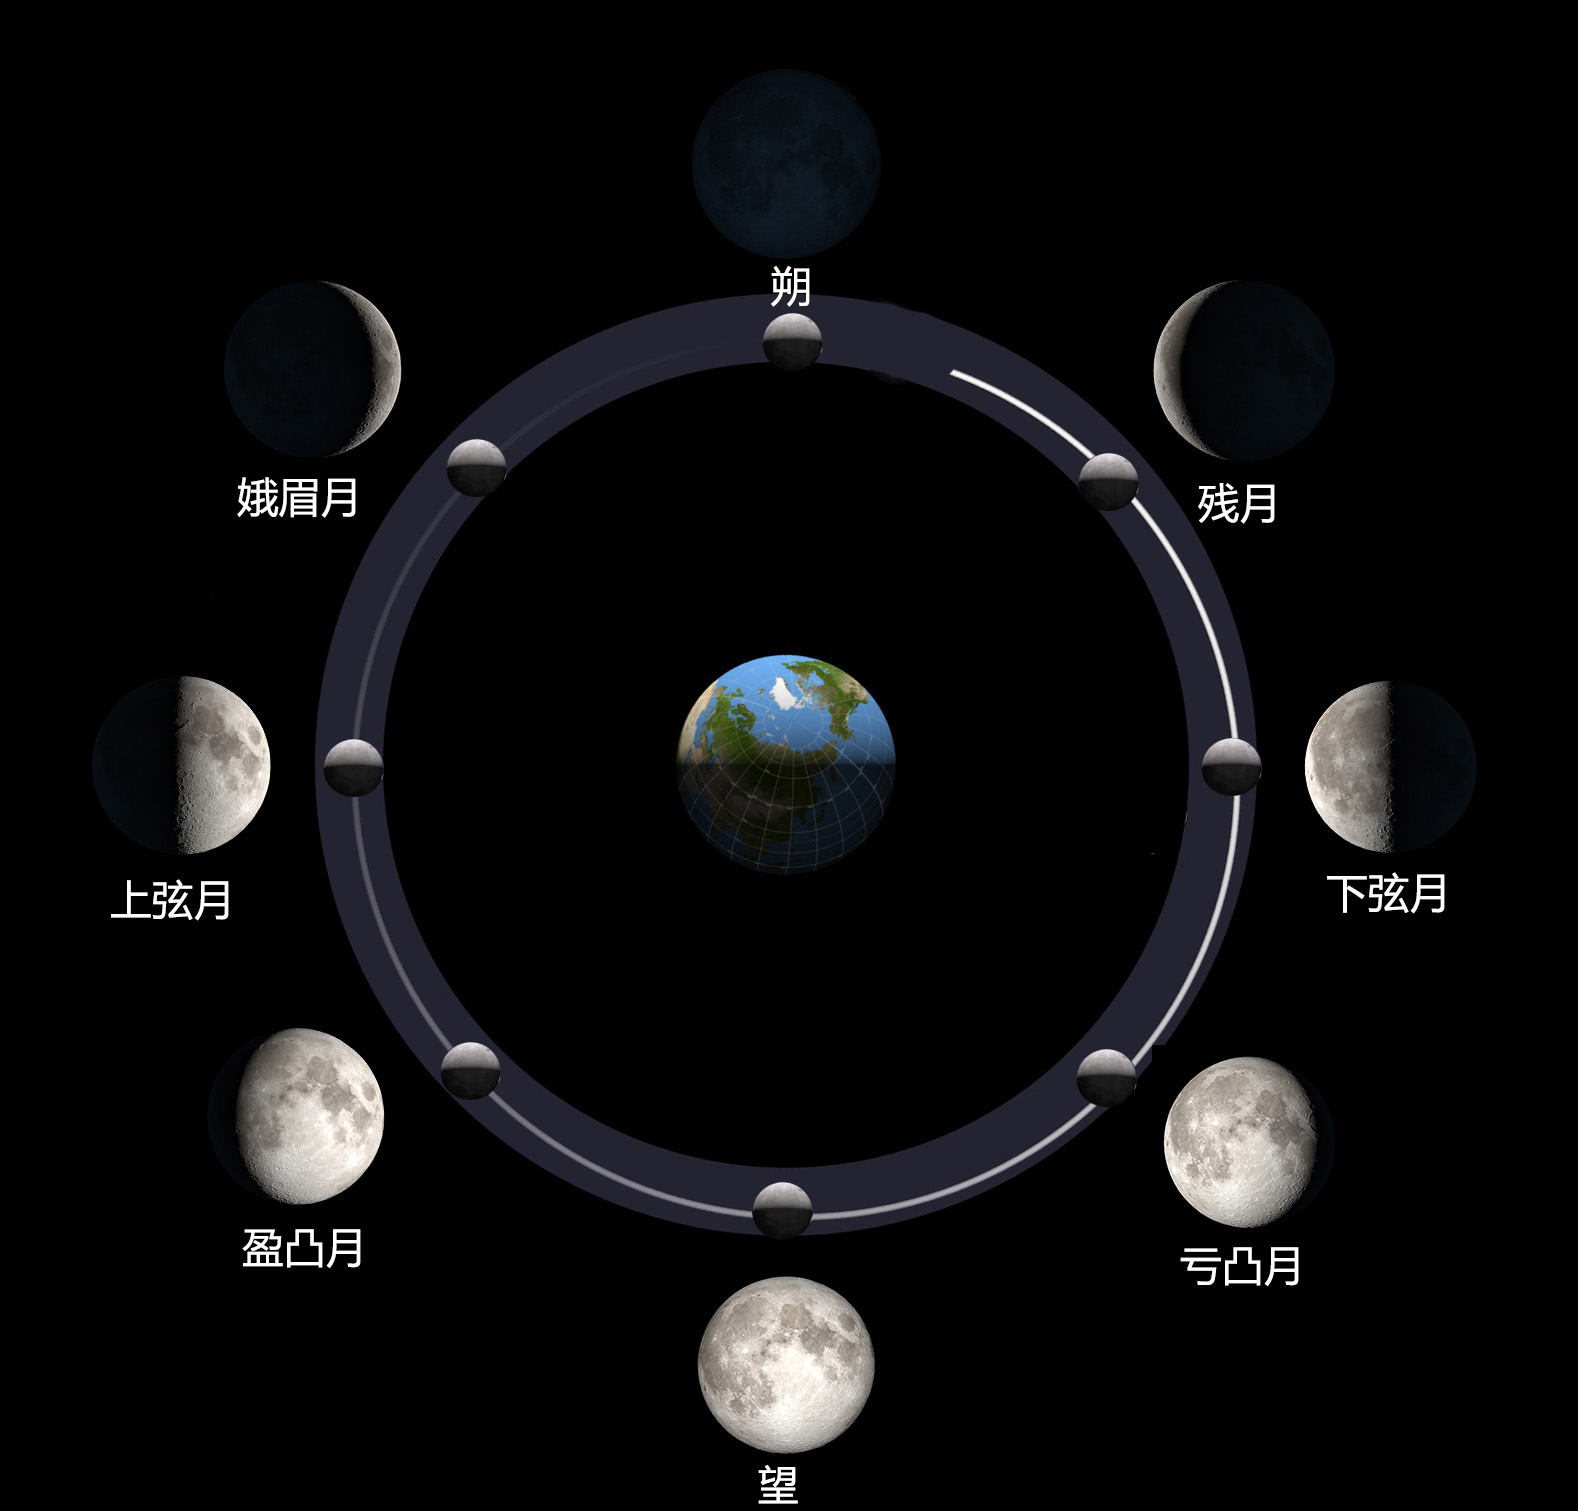 月球阴晴圆缺的变化,可以归结出8个基本形态:新月(朔